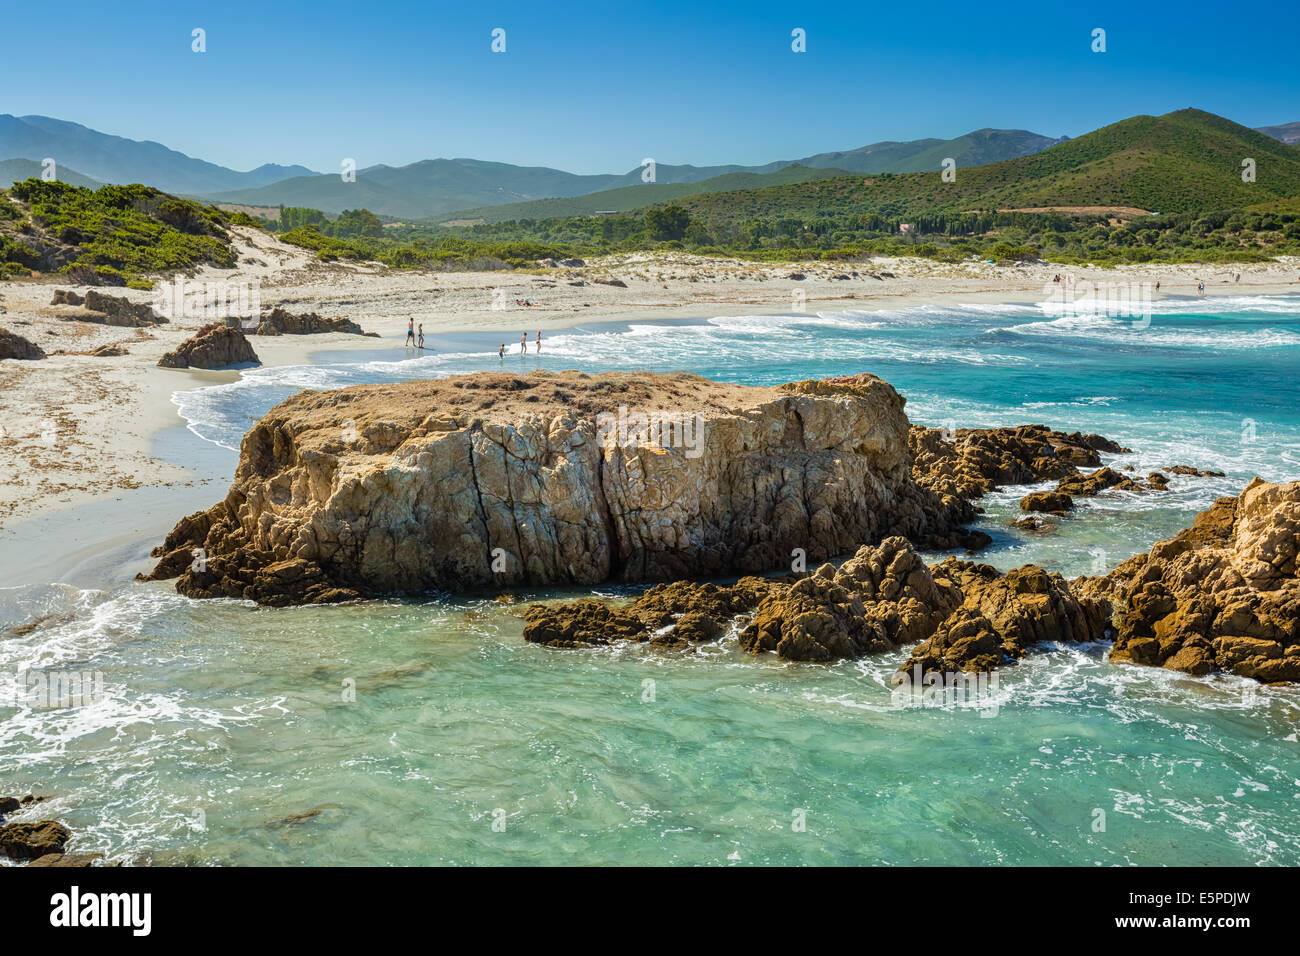 Ostriconi beach in the Balagne region of north Corsica Stock Photo